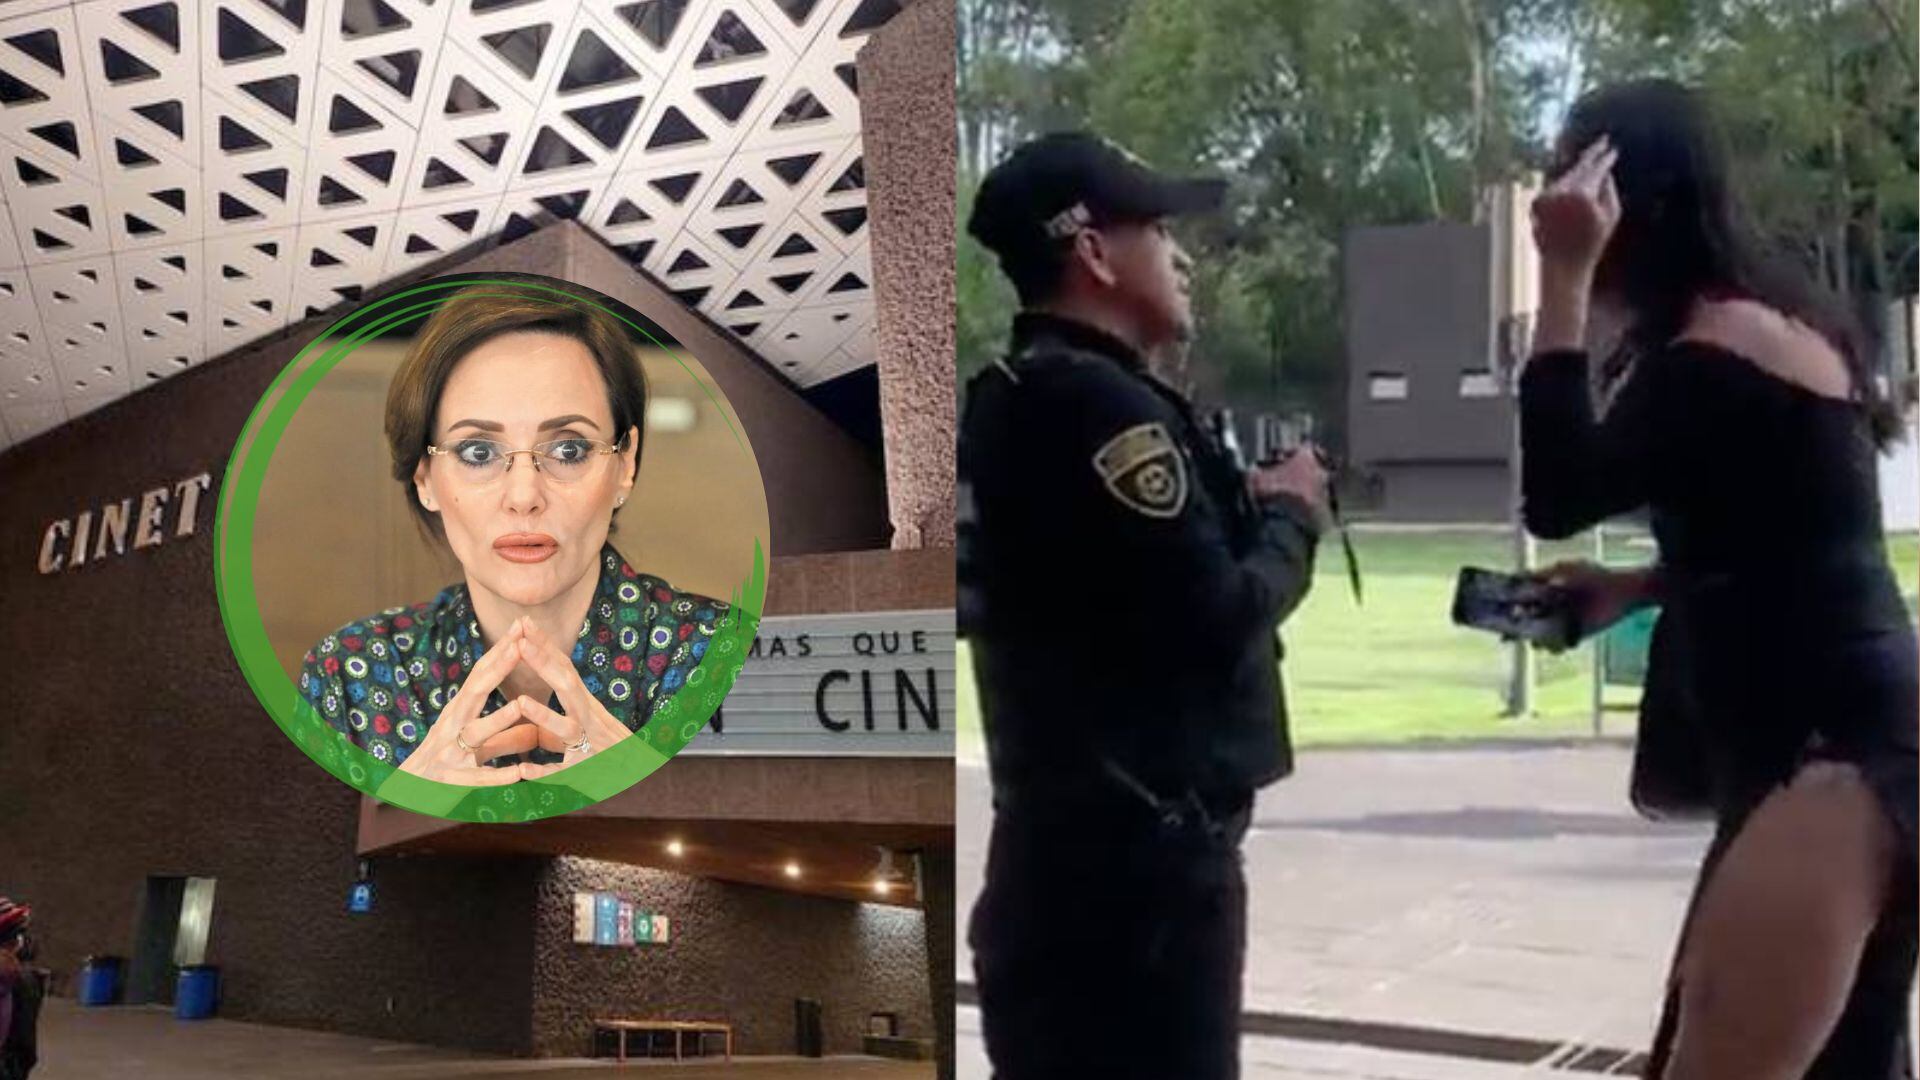 En el breve video se observa a la mujer trans discutir con un polícia cuestionando “cuántas veces más va a pasar esto en la Cineteca Nacional”.